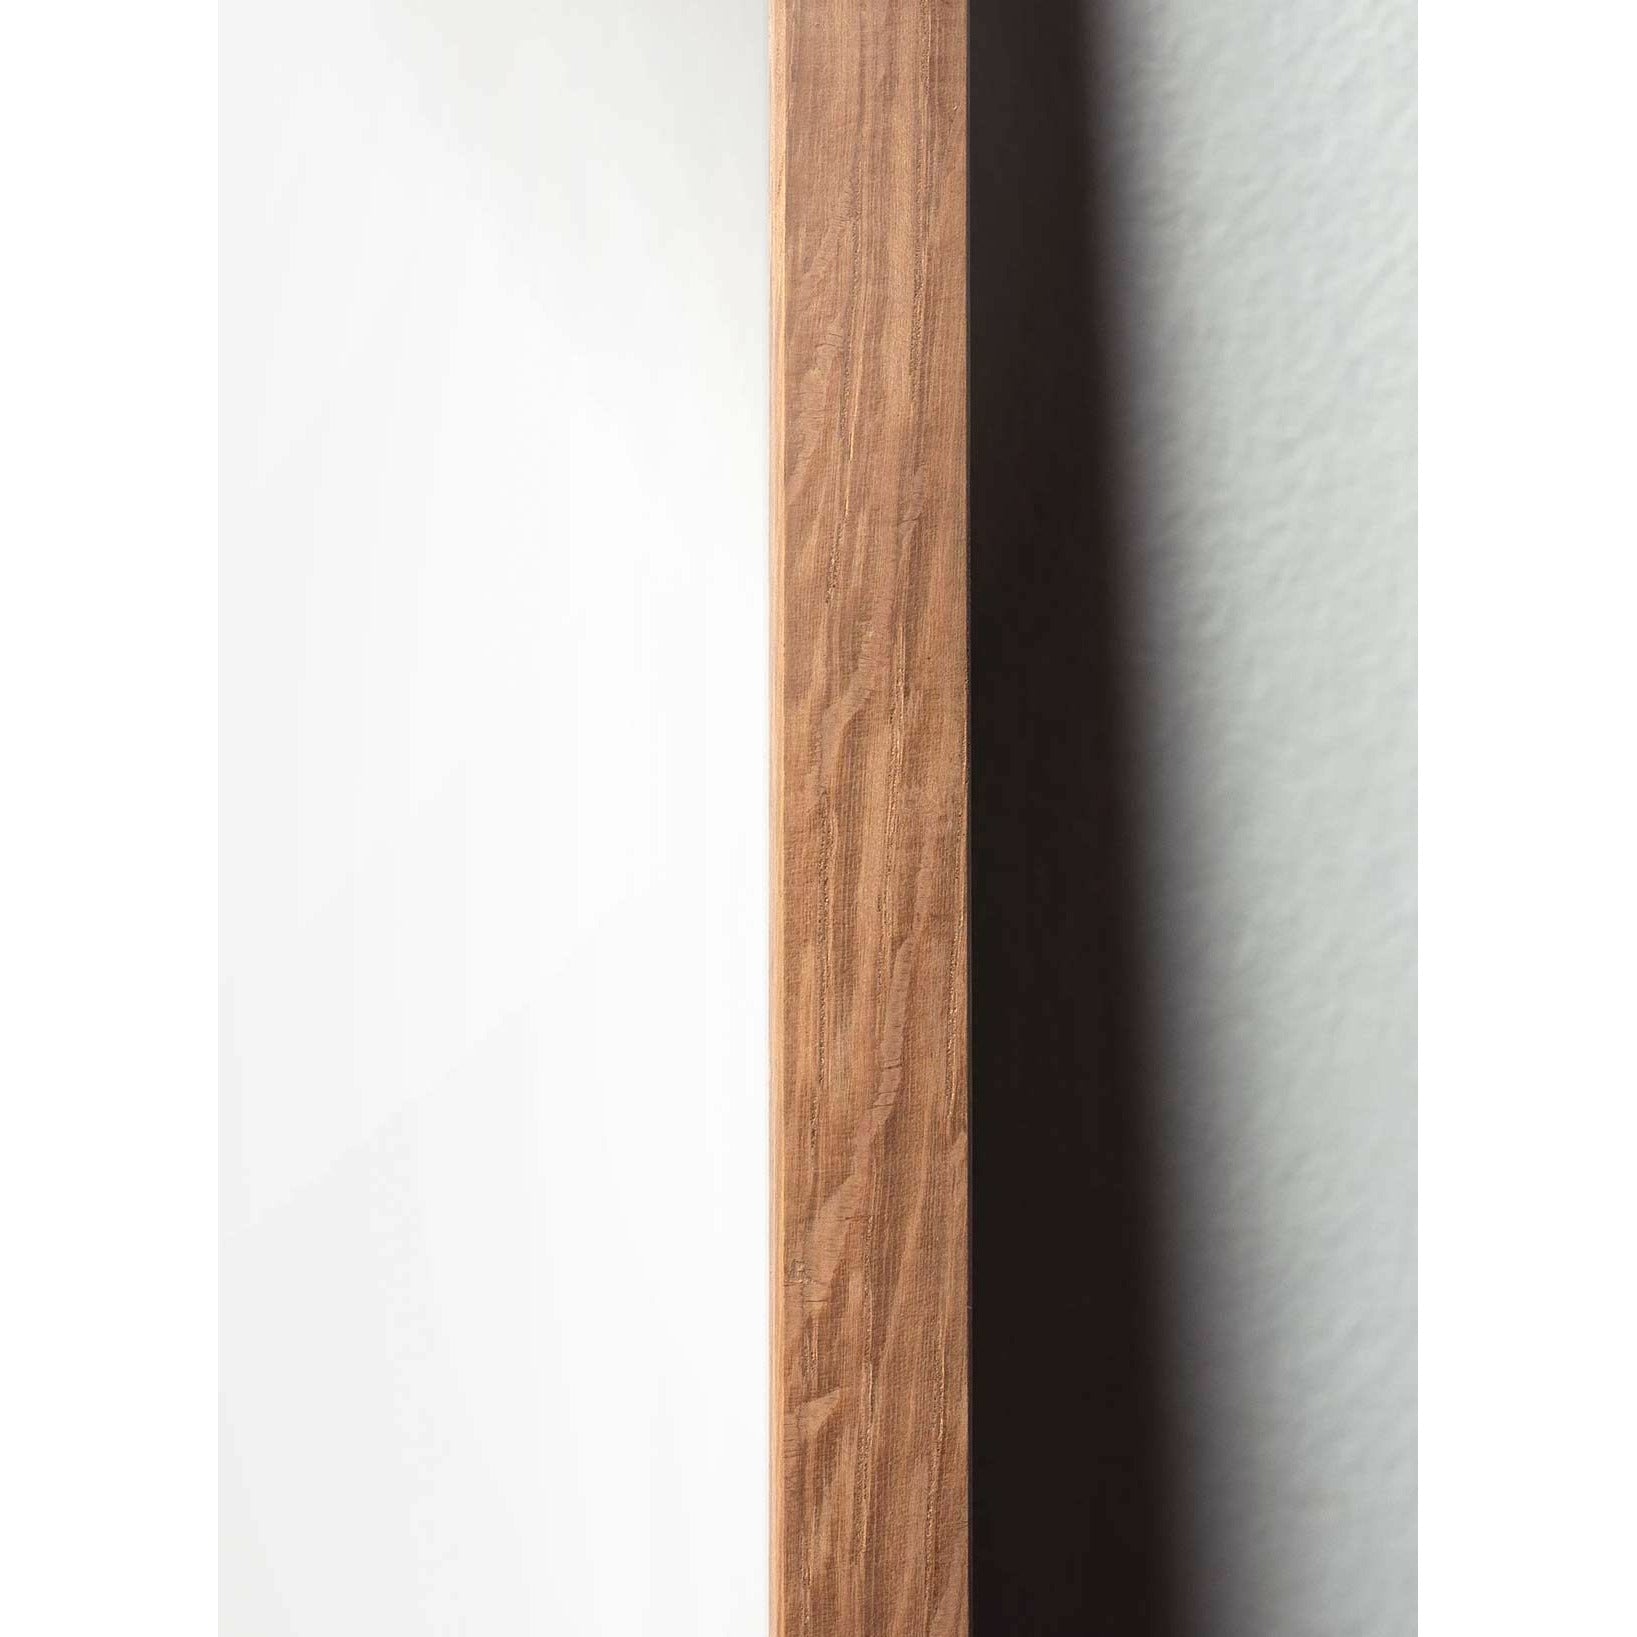 Póster clásico de cono de pino de creación, marco hecho de madera clara 50x70 cm, fondo amarillo